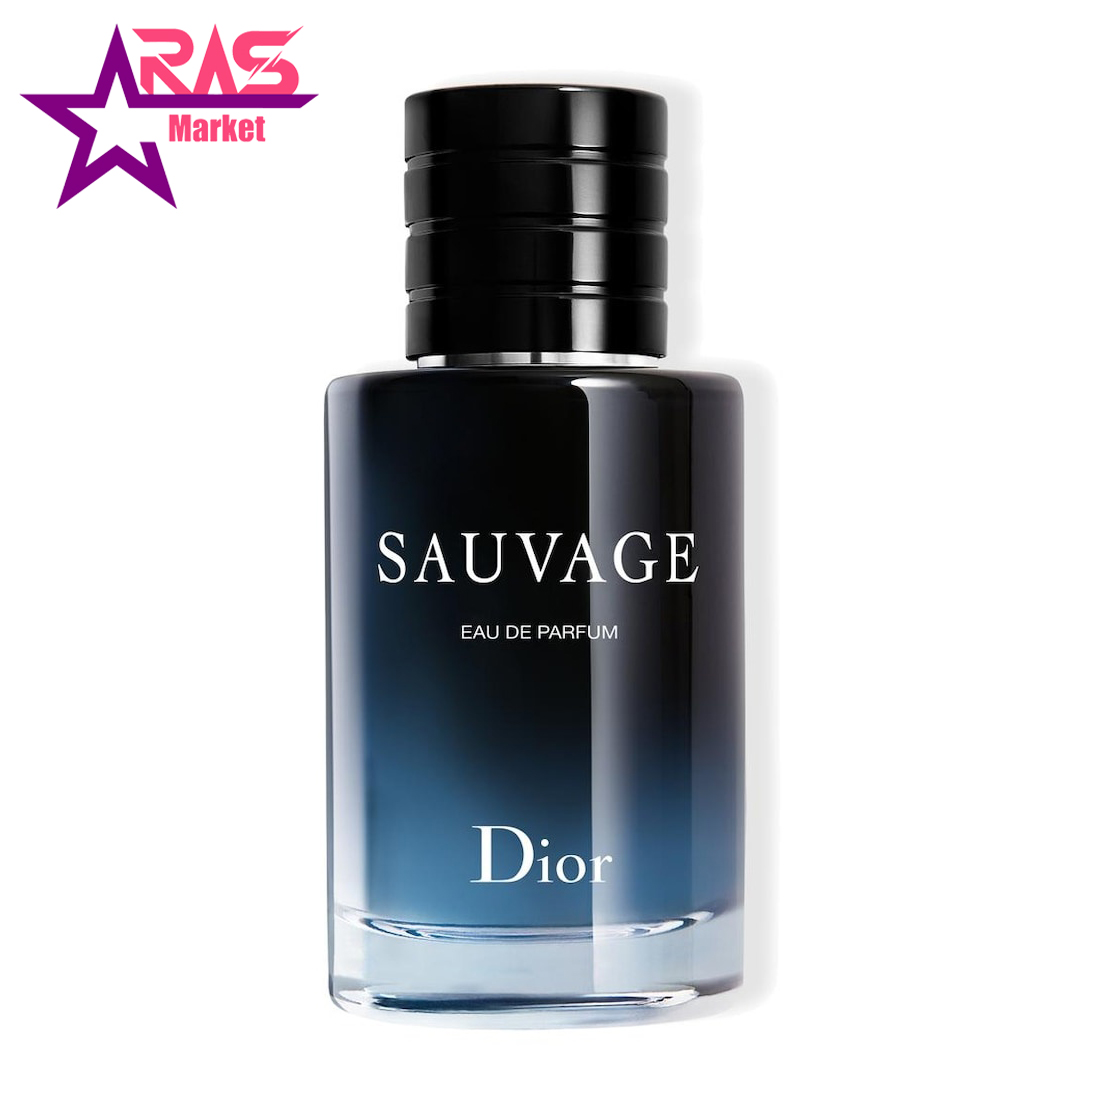 عطر دیور Dior Sauvage Eau de Parfum مردانه 100 میلی لیتر ، فروشگاه اینترنتی ارس مارکت